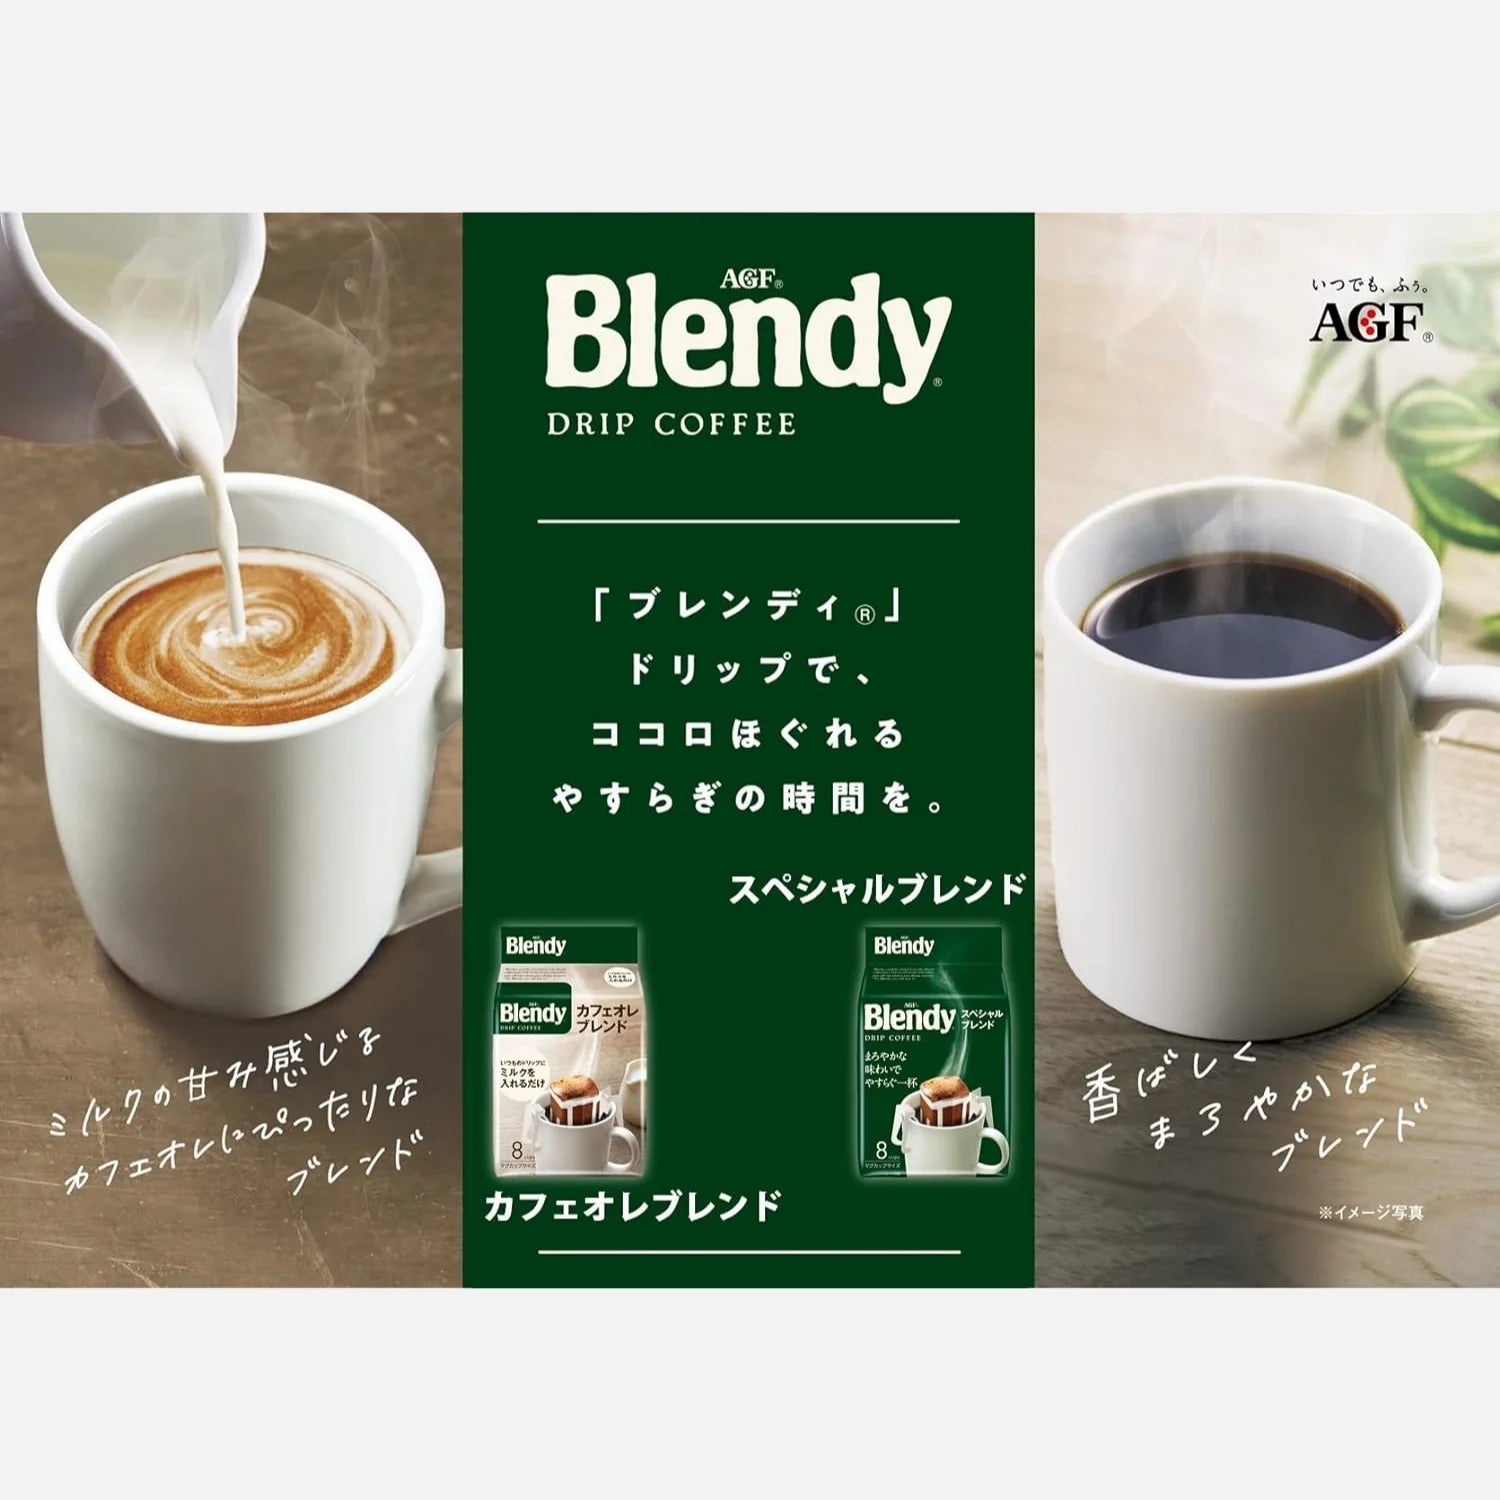 AGF Blendy Drip Coffee Special Blend (Pack of 18) - Buy Me Japan